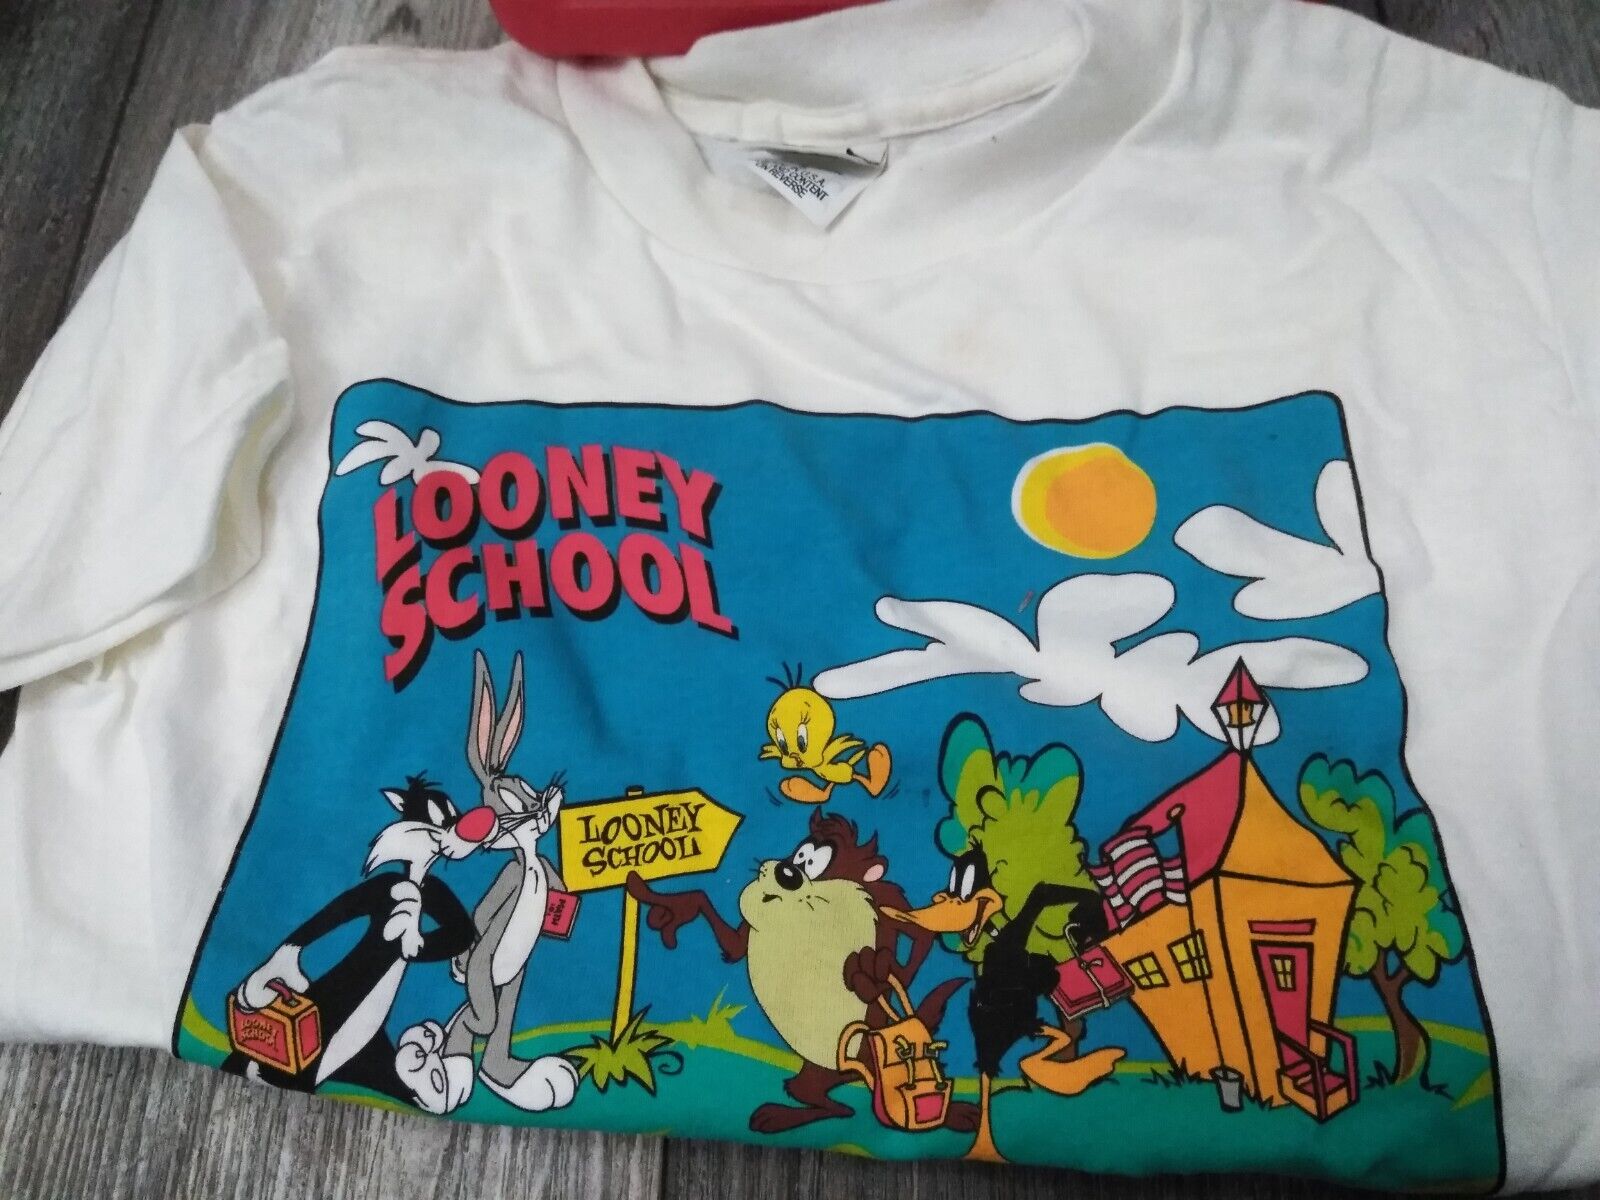 N.O.S. WARNER BROS. 1990'S Looney Tunes, Looney School RED Lunchbox W/ T-SHIRT Thermos - фотография #14